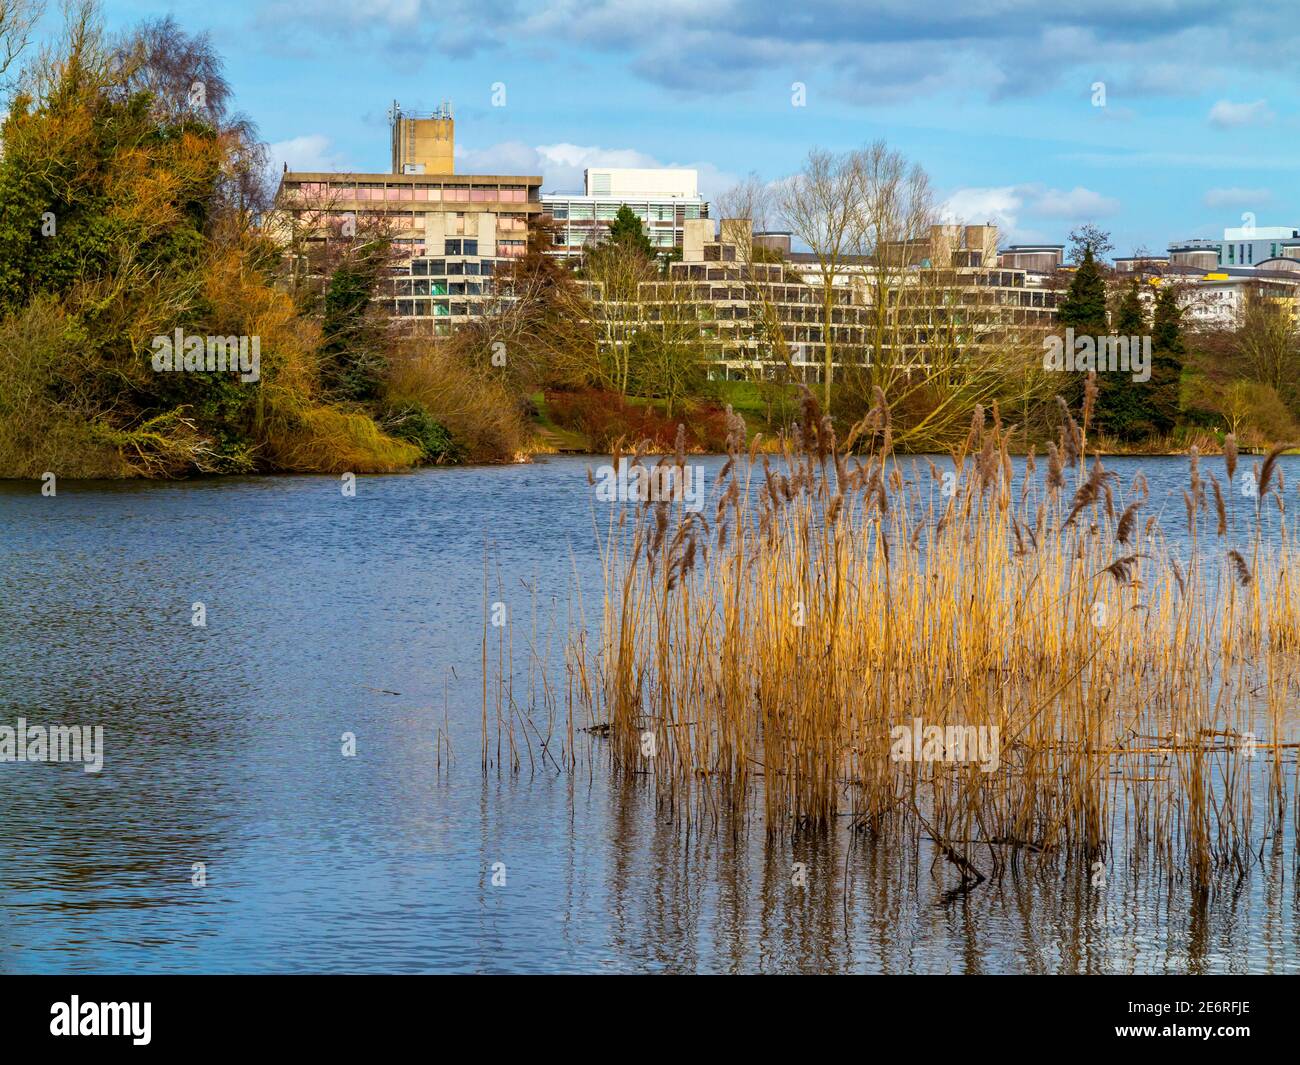 Der Campus der University of East Anglia in Norwich England wurde von Denys Lasdun entworfen und von 1962 bis 1968 mit See und Schilf im Vordergrund gebaut. Stockfoto